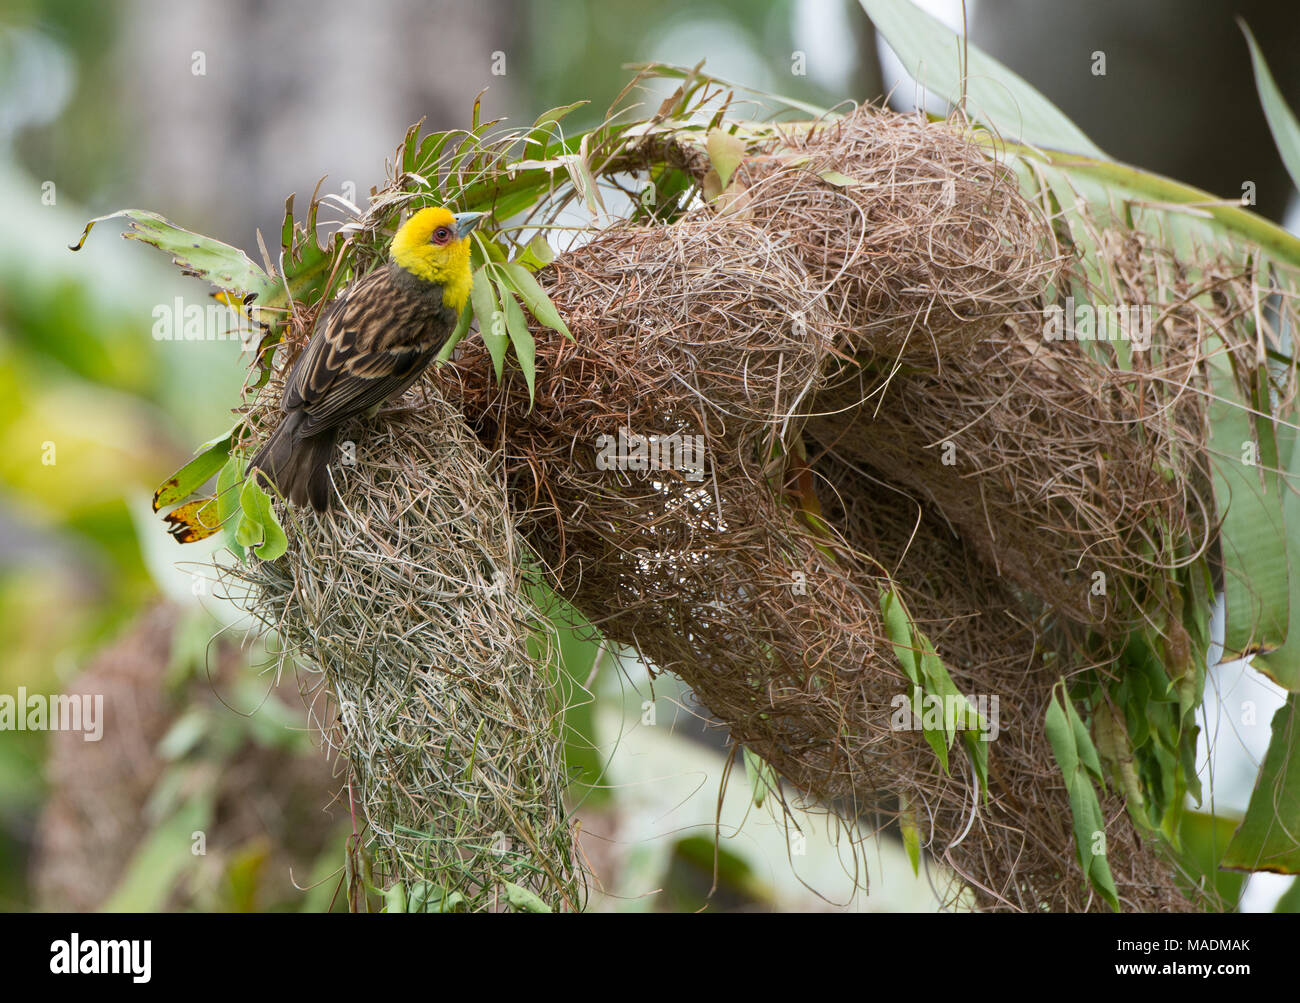 Un Sakalava Weaver (Ploceus sakalava) en plumaje nupcial, la construcción del nido en Madagascar Foto de stock